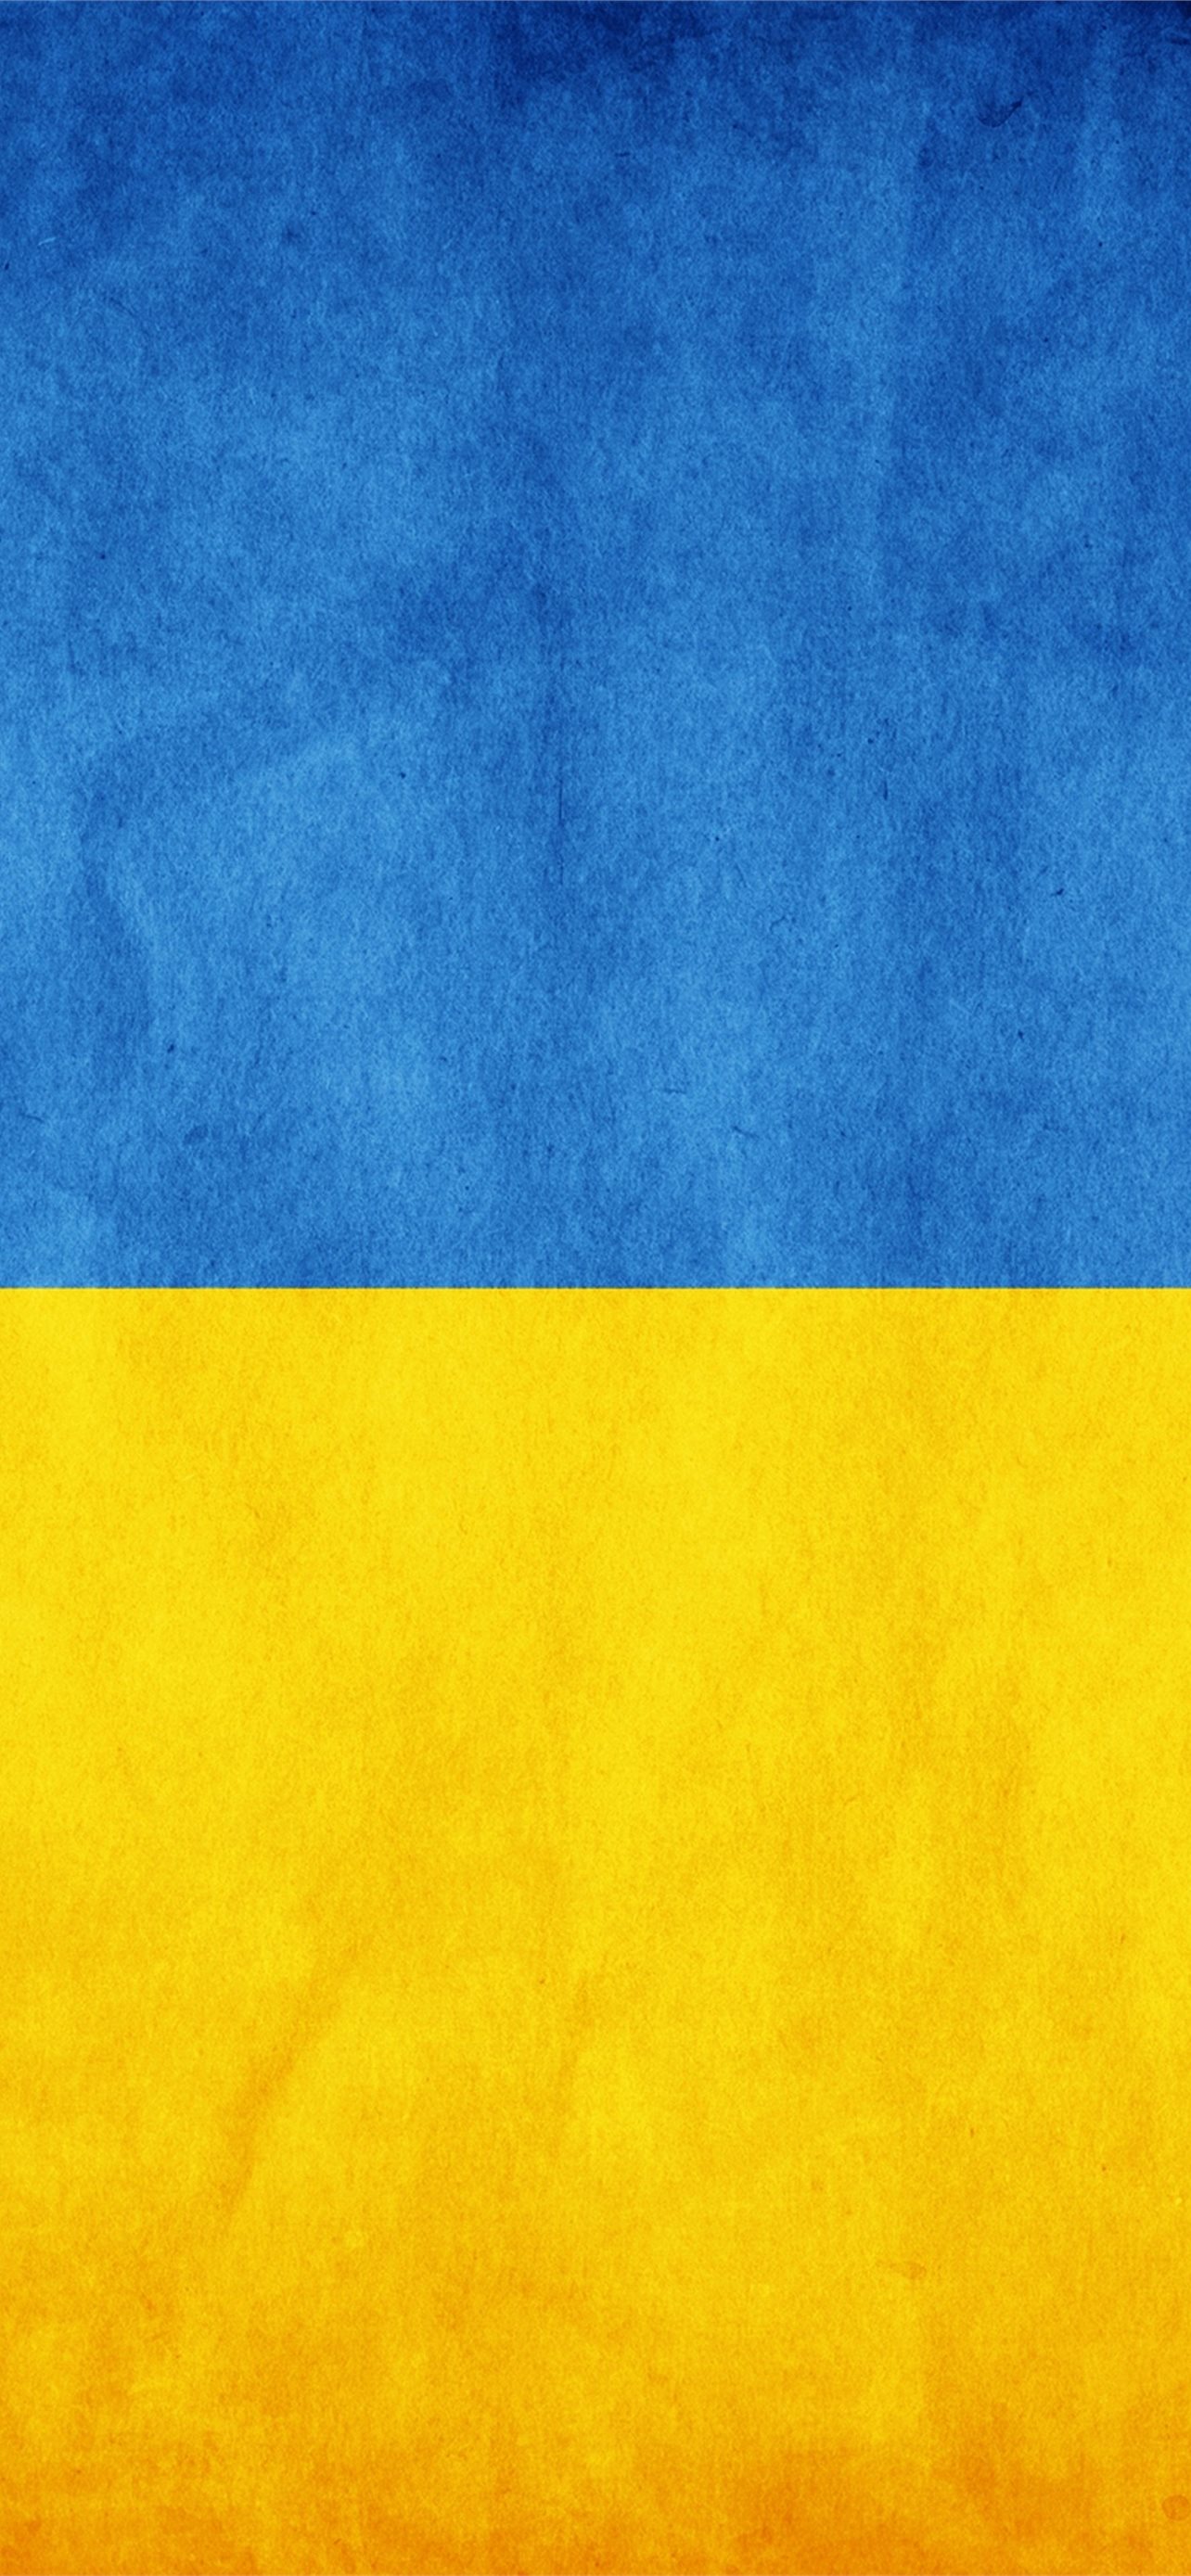 Hình nền iPhone Ukraina: Kết hợp giữa vẻ đẹp của Ukraina và tính độc đáo của iPhone, những hình nền iPhone Ukraina sẽ đem đến trải nghiệm sống động và đặc biệt cho thiết bị của bạn. Đây là lựa chọn hoàn hảo cho những ai yêu thích sự kết hợp giữa nghệ thuật và công nghệ.